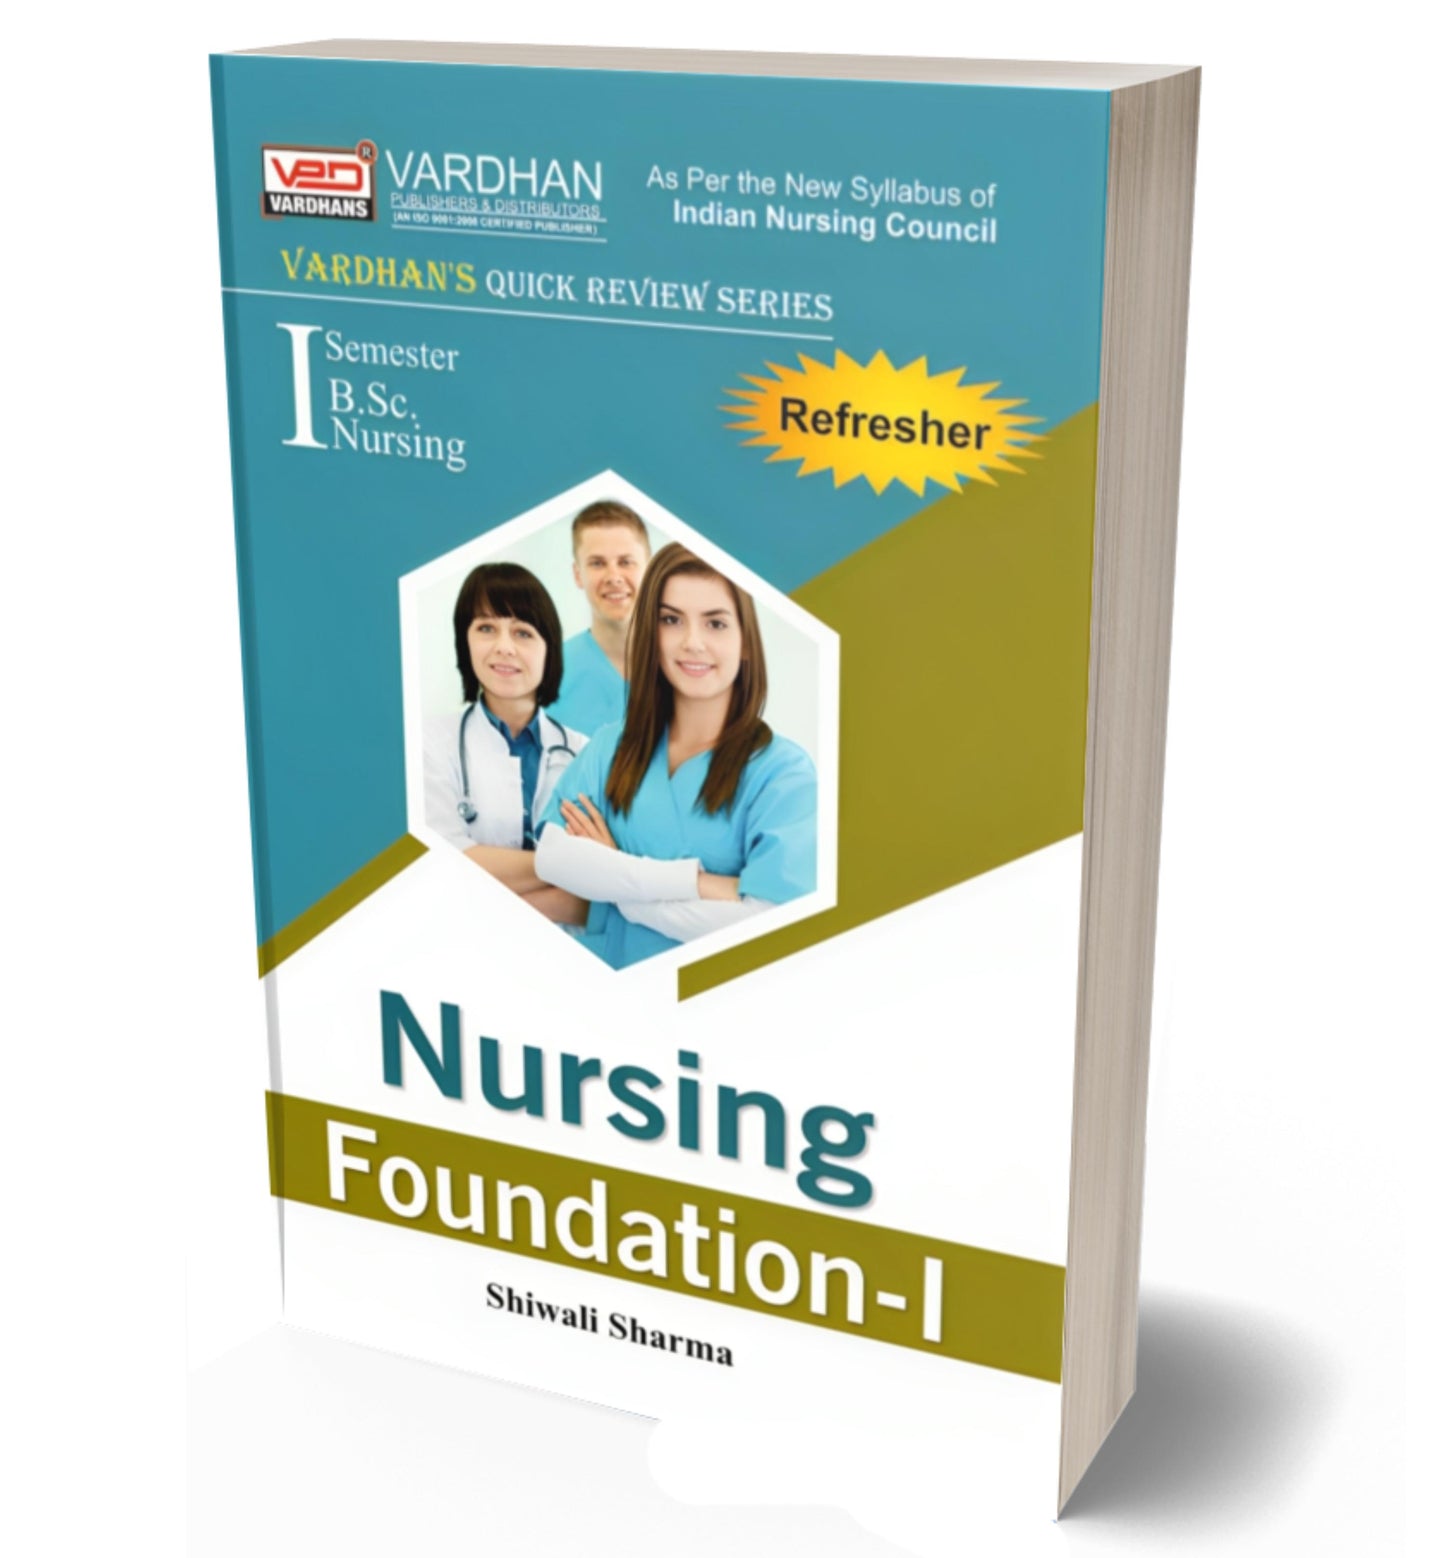 Nursing Foundation-I (Quick Review Series)